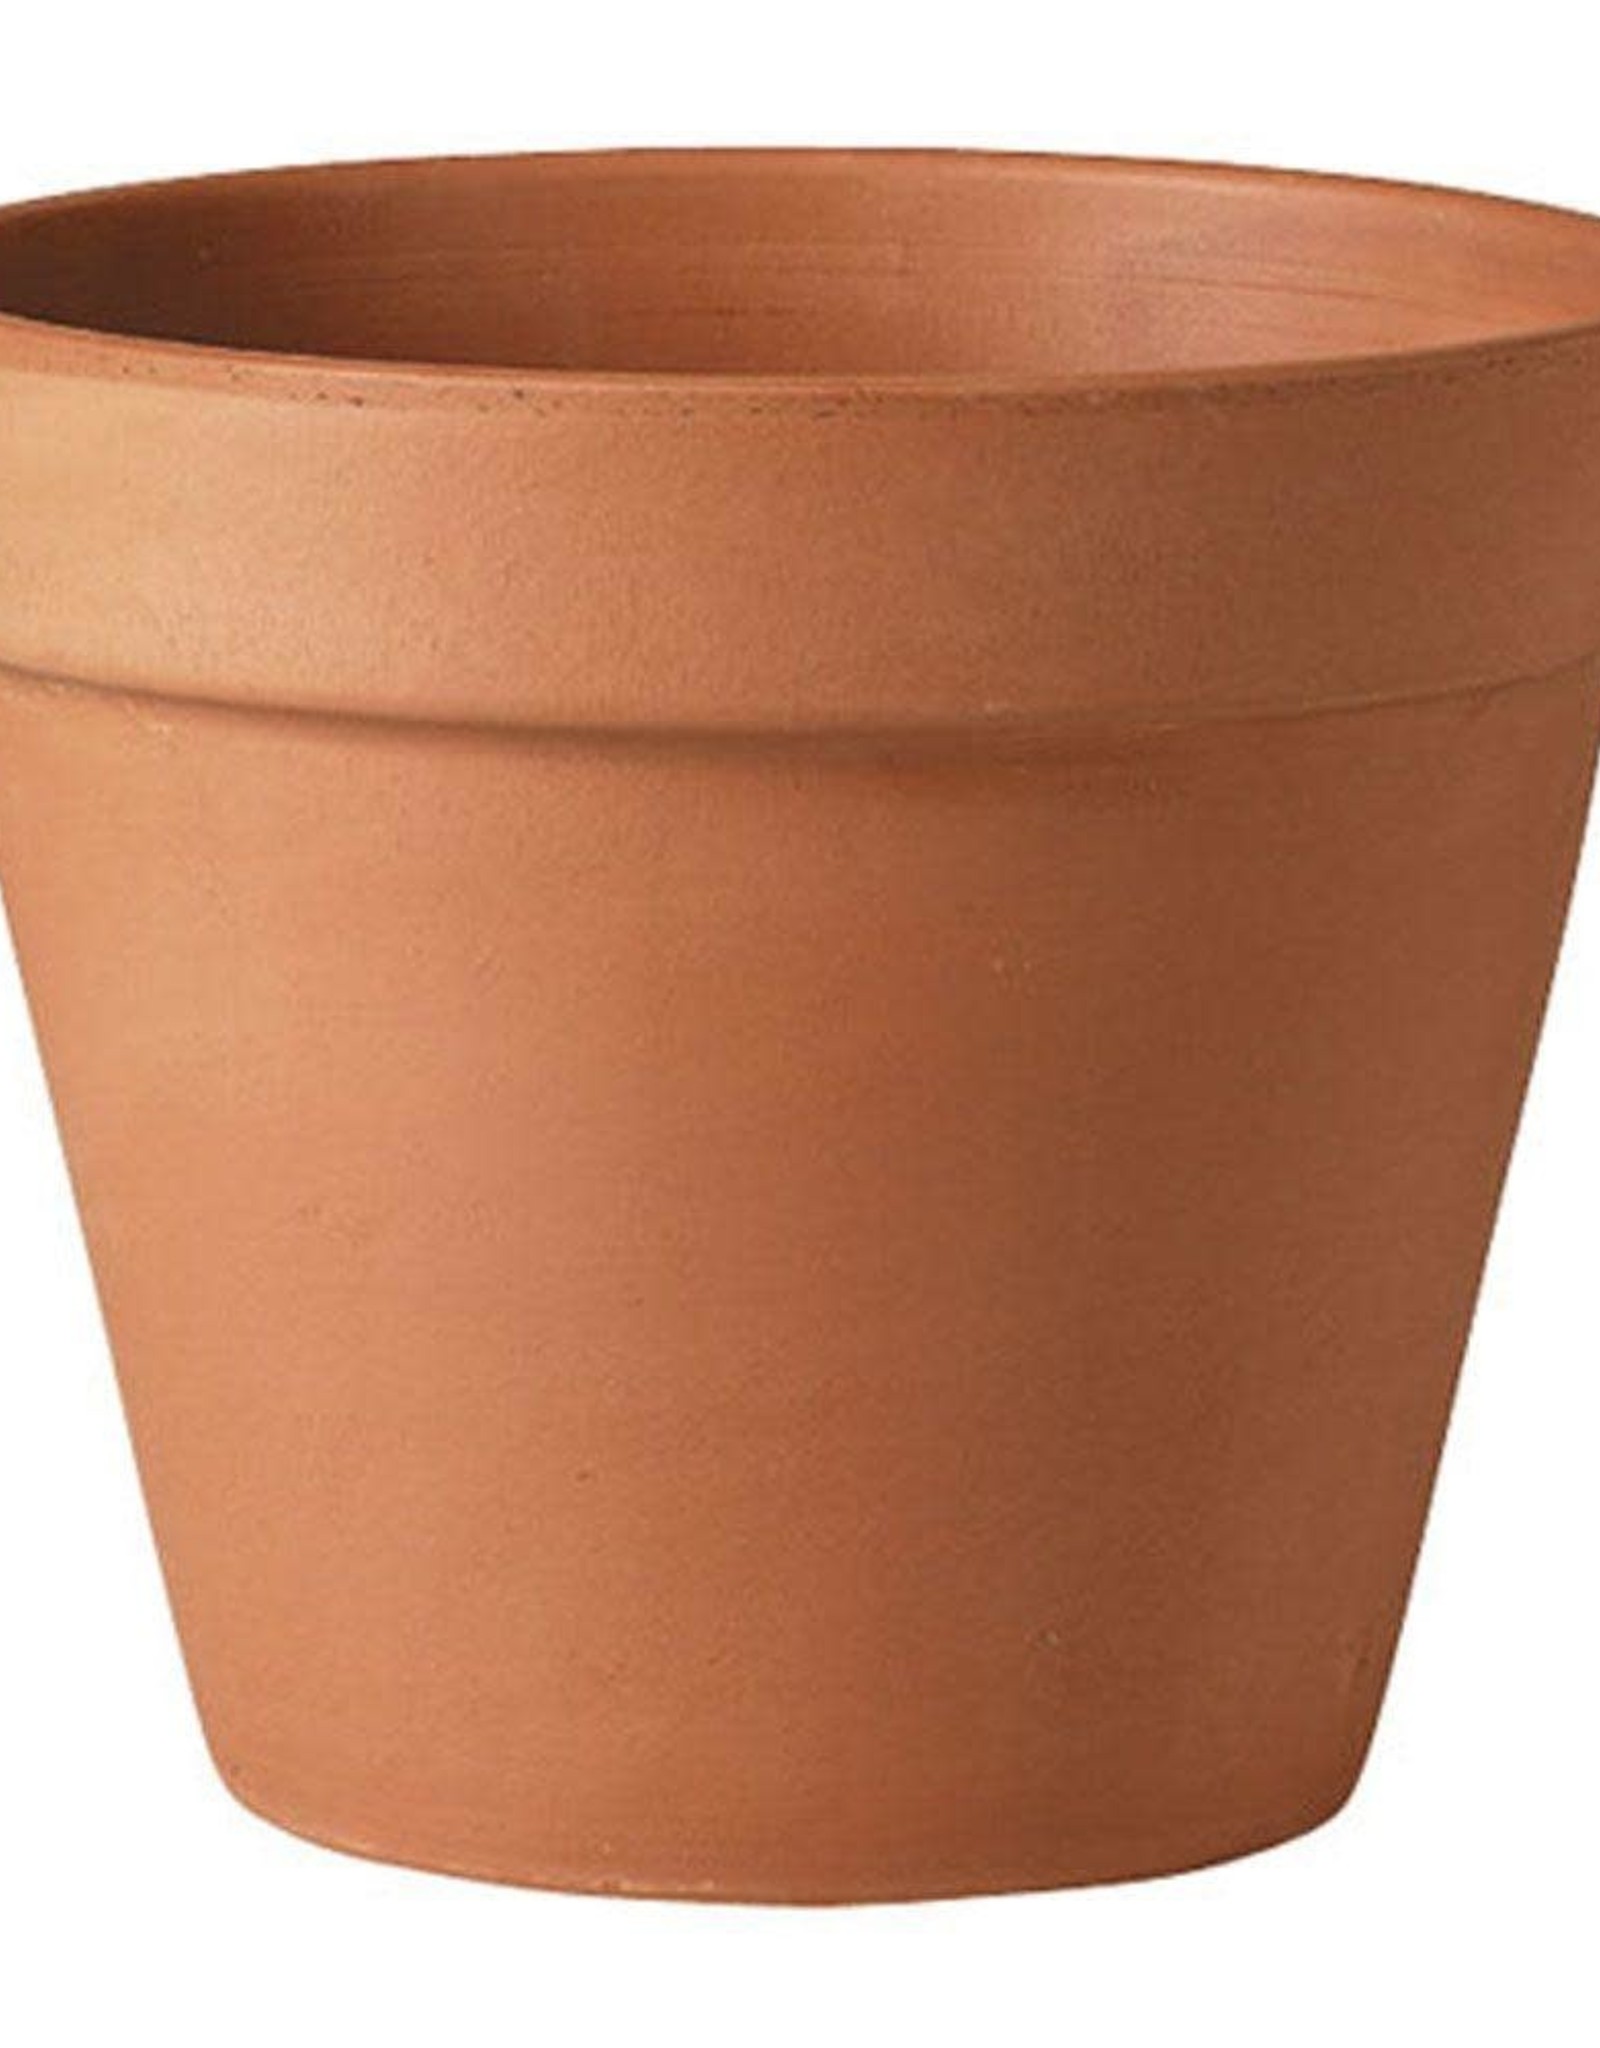 Pennington 6" pot with matching base drain